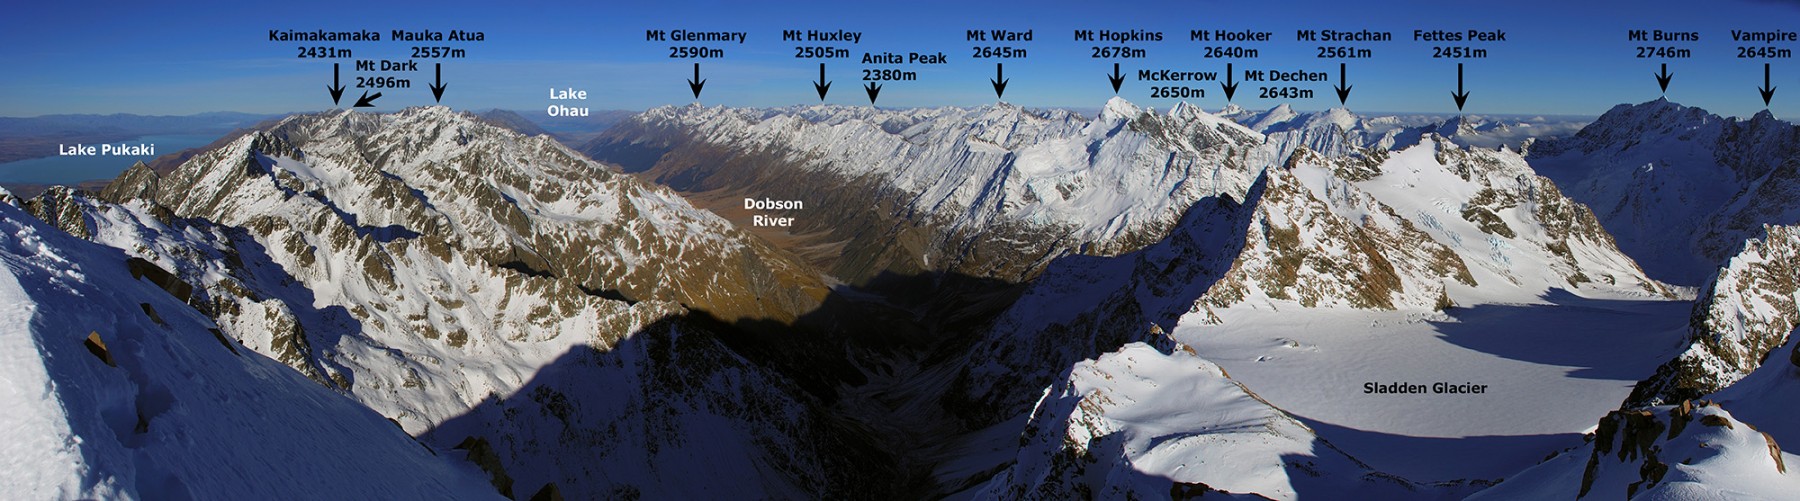 Sladden Glacier